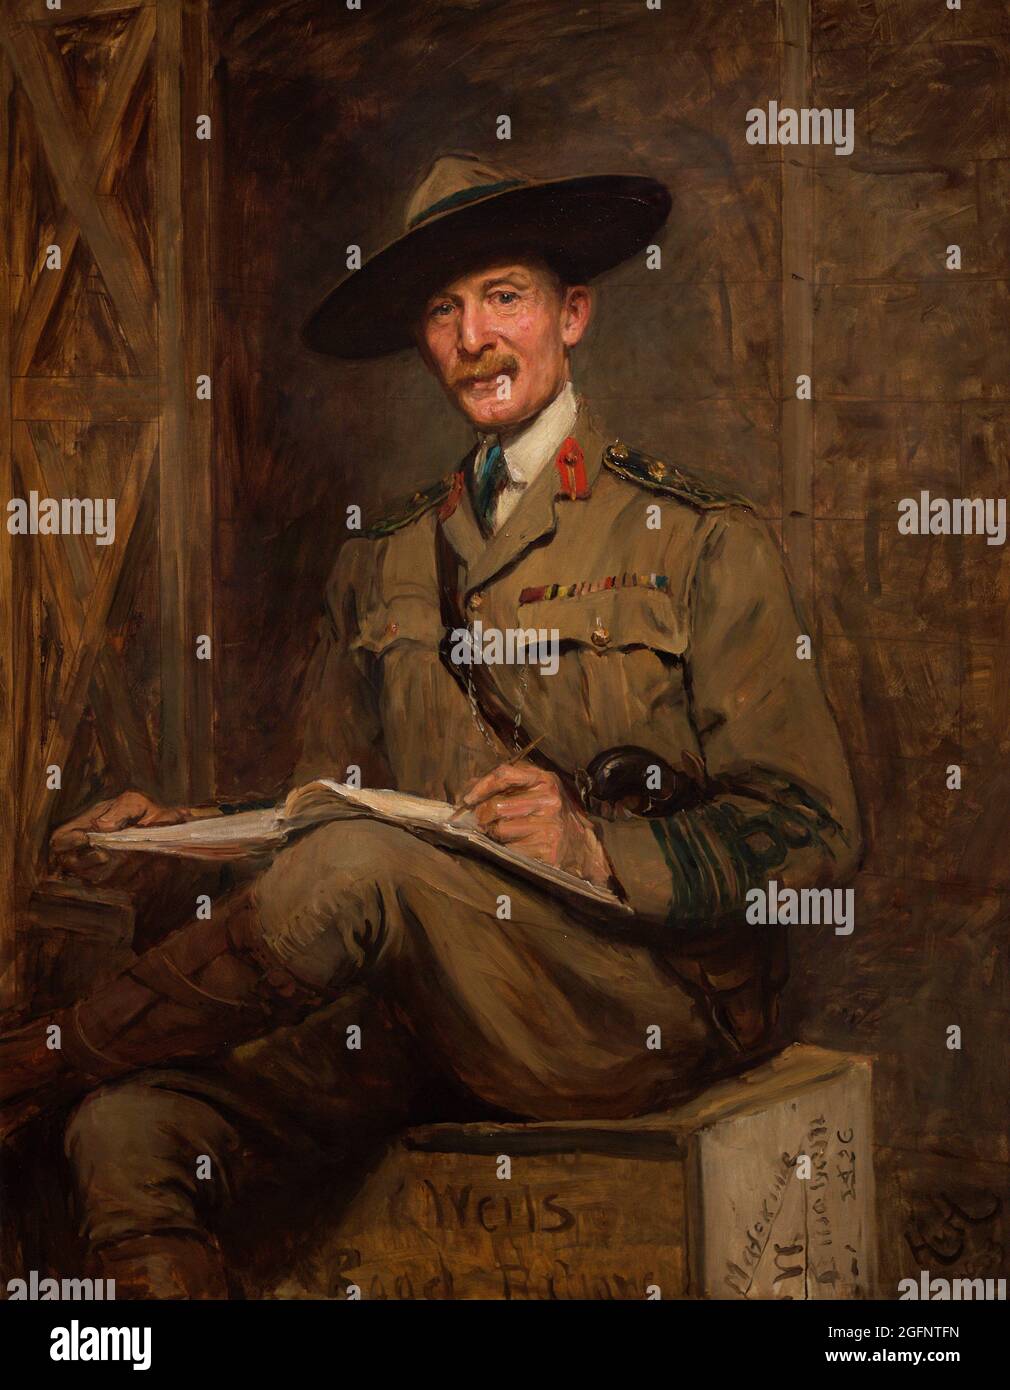 Robert Baden-Powell, 1er baron Baden-Powell (1857-1941). Major-général britannique et écrivain. Fondateur des scouts et des Guides. Portrait de Sir Hubert von Herkomer (1849-1914). Huile sur toile (141,9 x 112,1 cm), 1903. Galerie nationale de portraits. Londres, Angleterre, Royaume-Uni. Banque D'Images